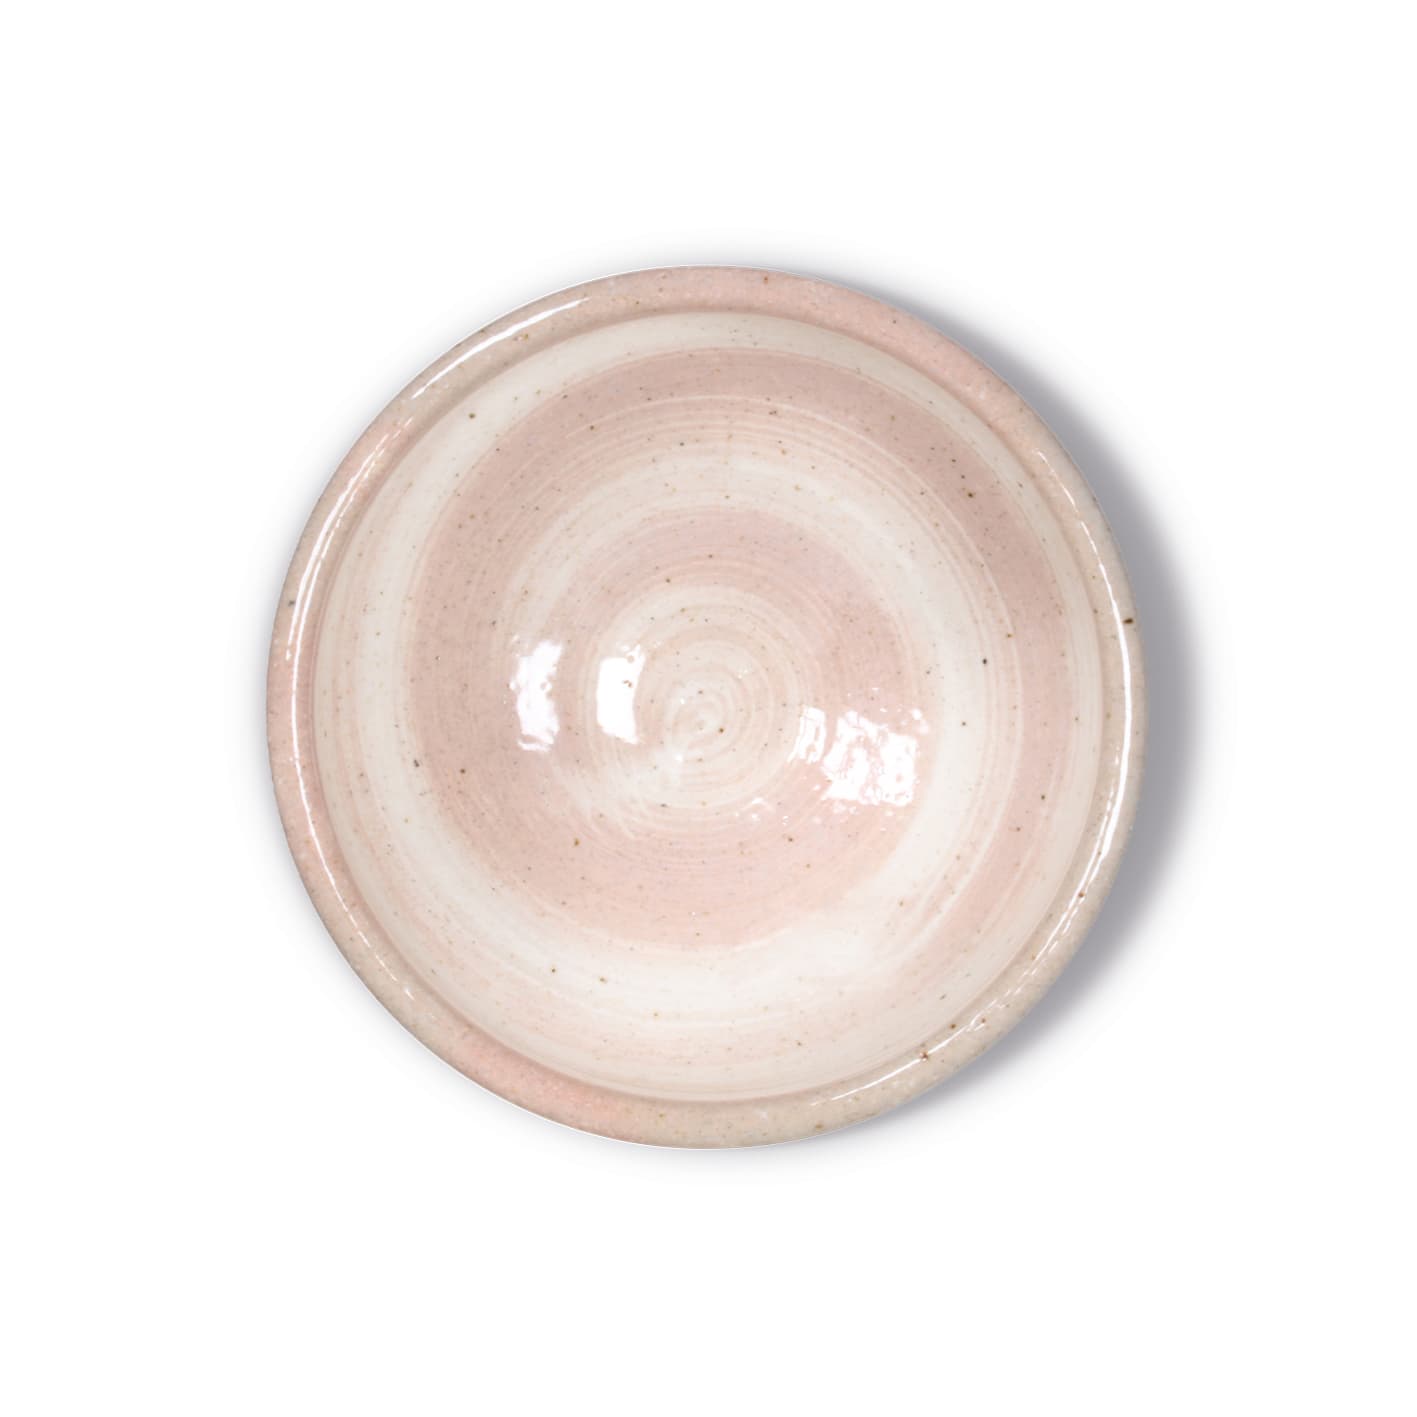 Eine rosa Matcha-Kāru-Schale auf einer weißen Oberfläche.